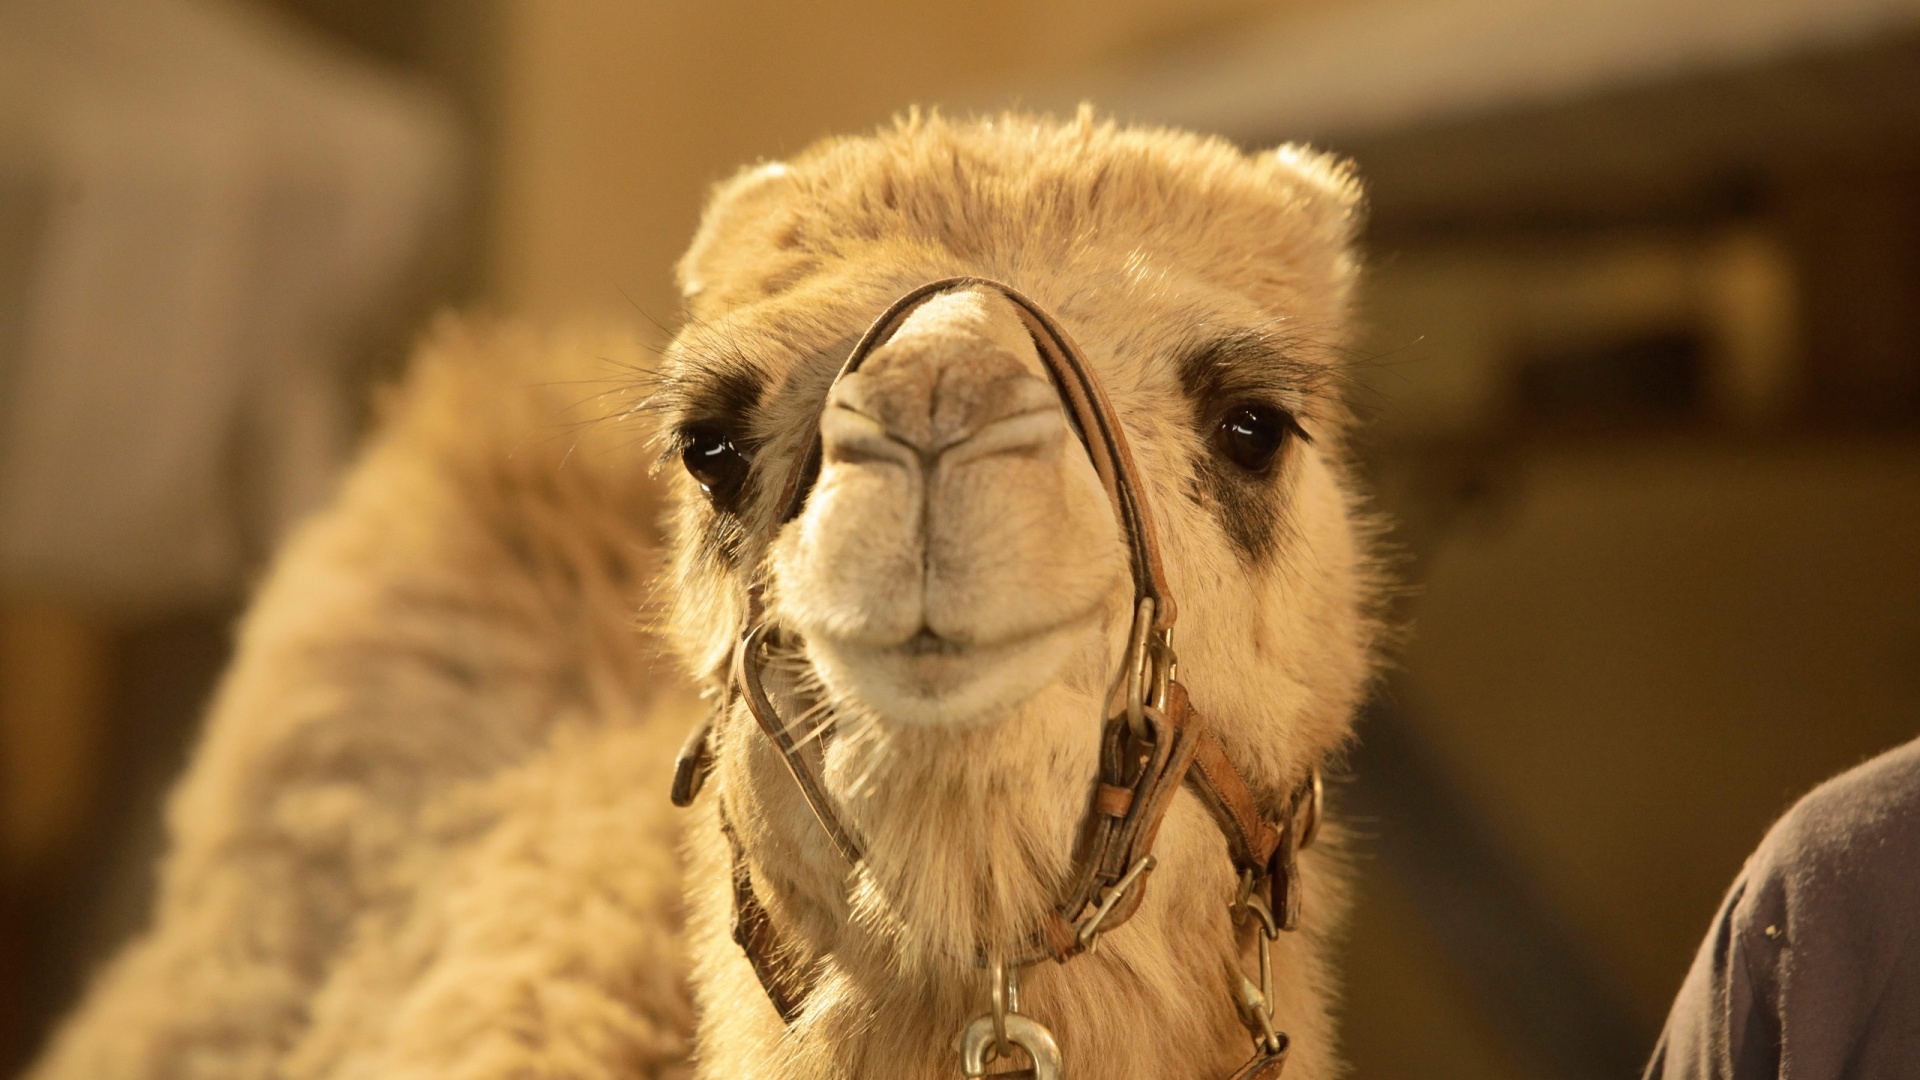 好喜欢眼睛 表情好萌萌哒的骆驼